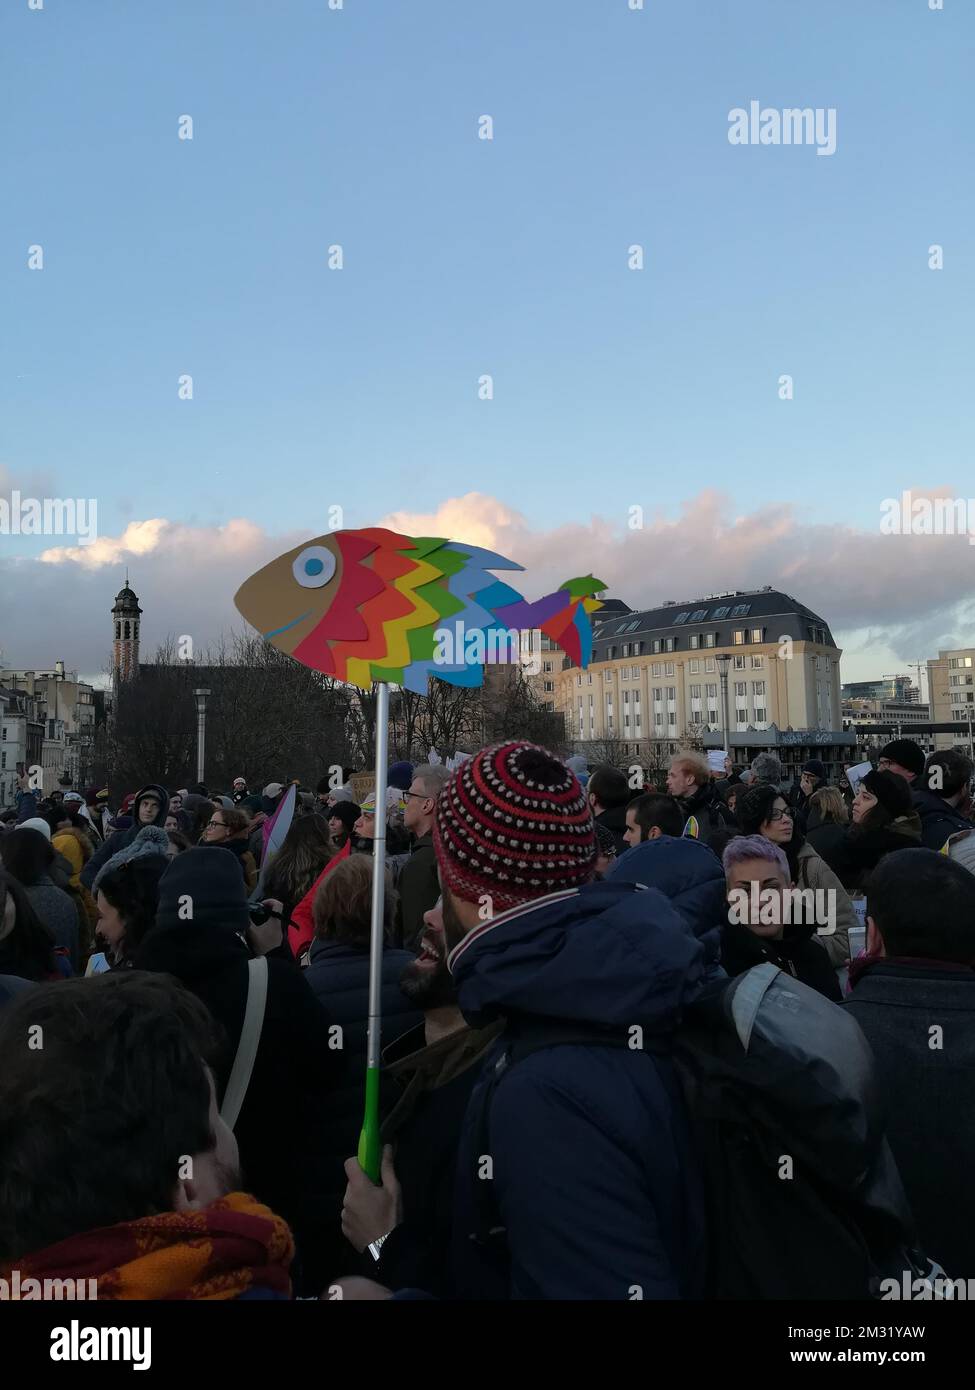 L'immagine mostra una dimostrazione del movimento sardino di sinistra, sabato 14 dicembre 2019 a Bruxelles. Il movimento Sardine è stato lanciato in Italia come protesta contro il partito della Lega anti-immigrazione guidato da Salvini. FOTO DI BELGA ANTONY GEVAERT Foto Stock